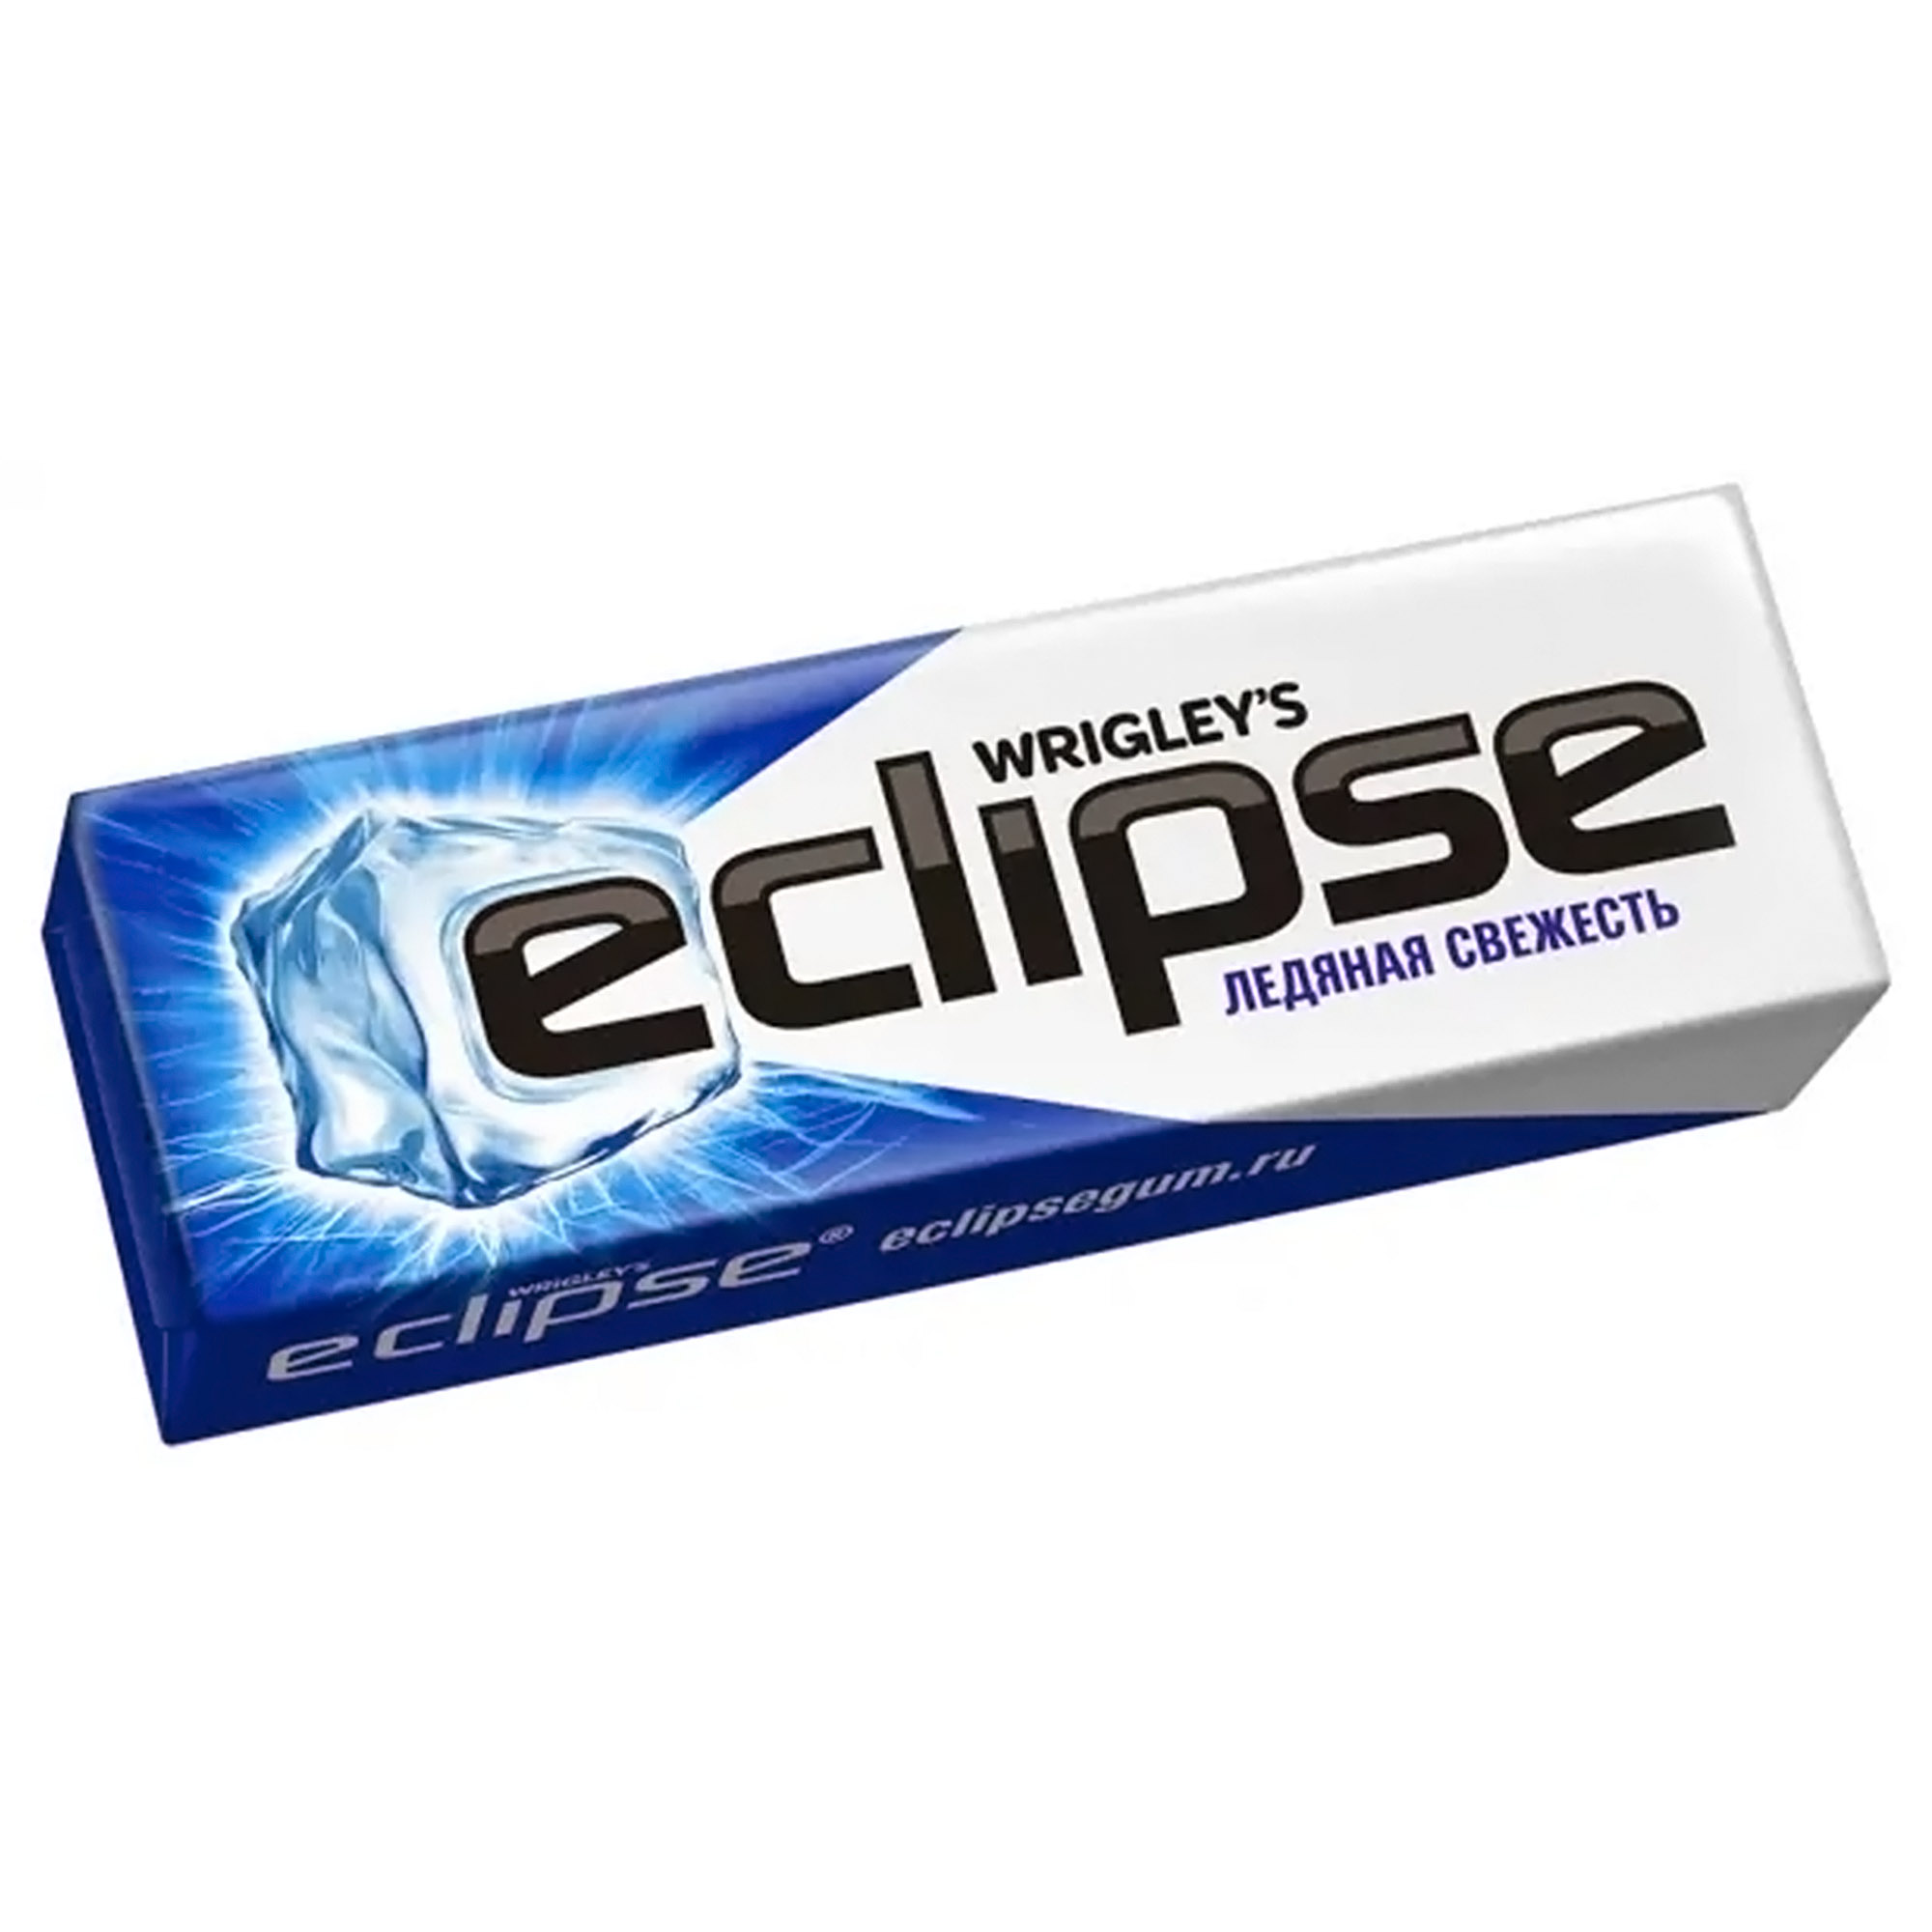 Жевательная резинка Eclipse Ледяная свежесть, 13,6 г без бренда жевательная резинка ледяная свежесть eclipse